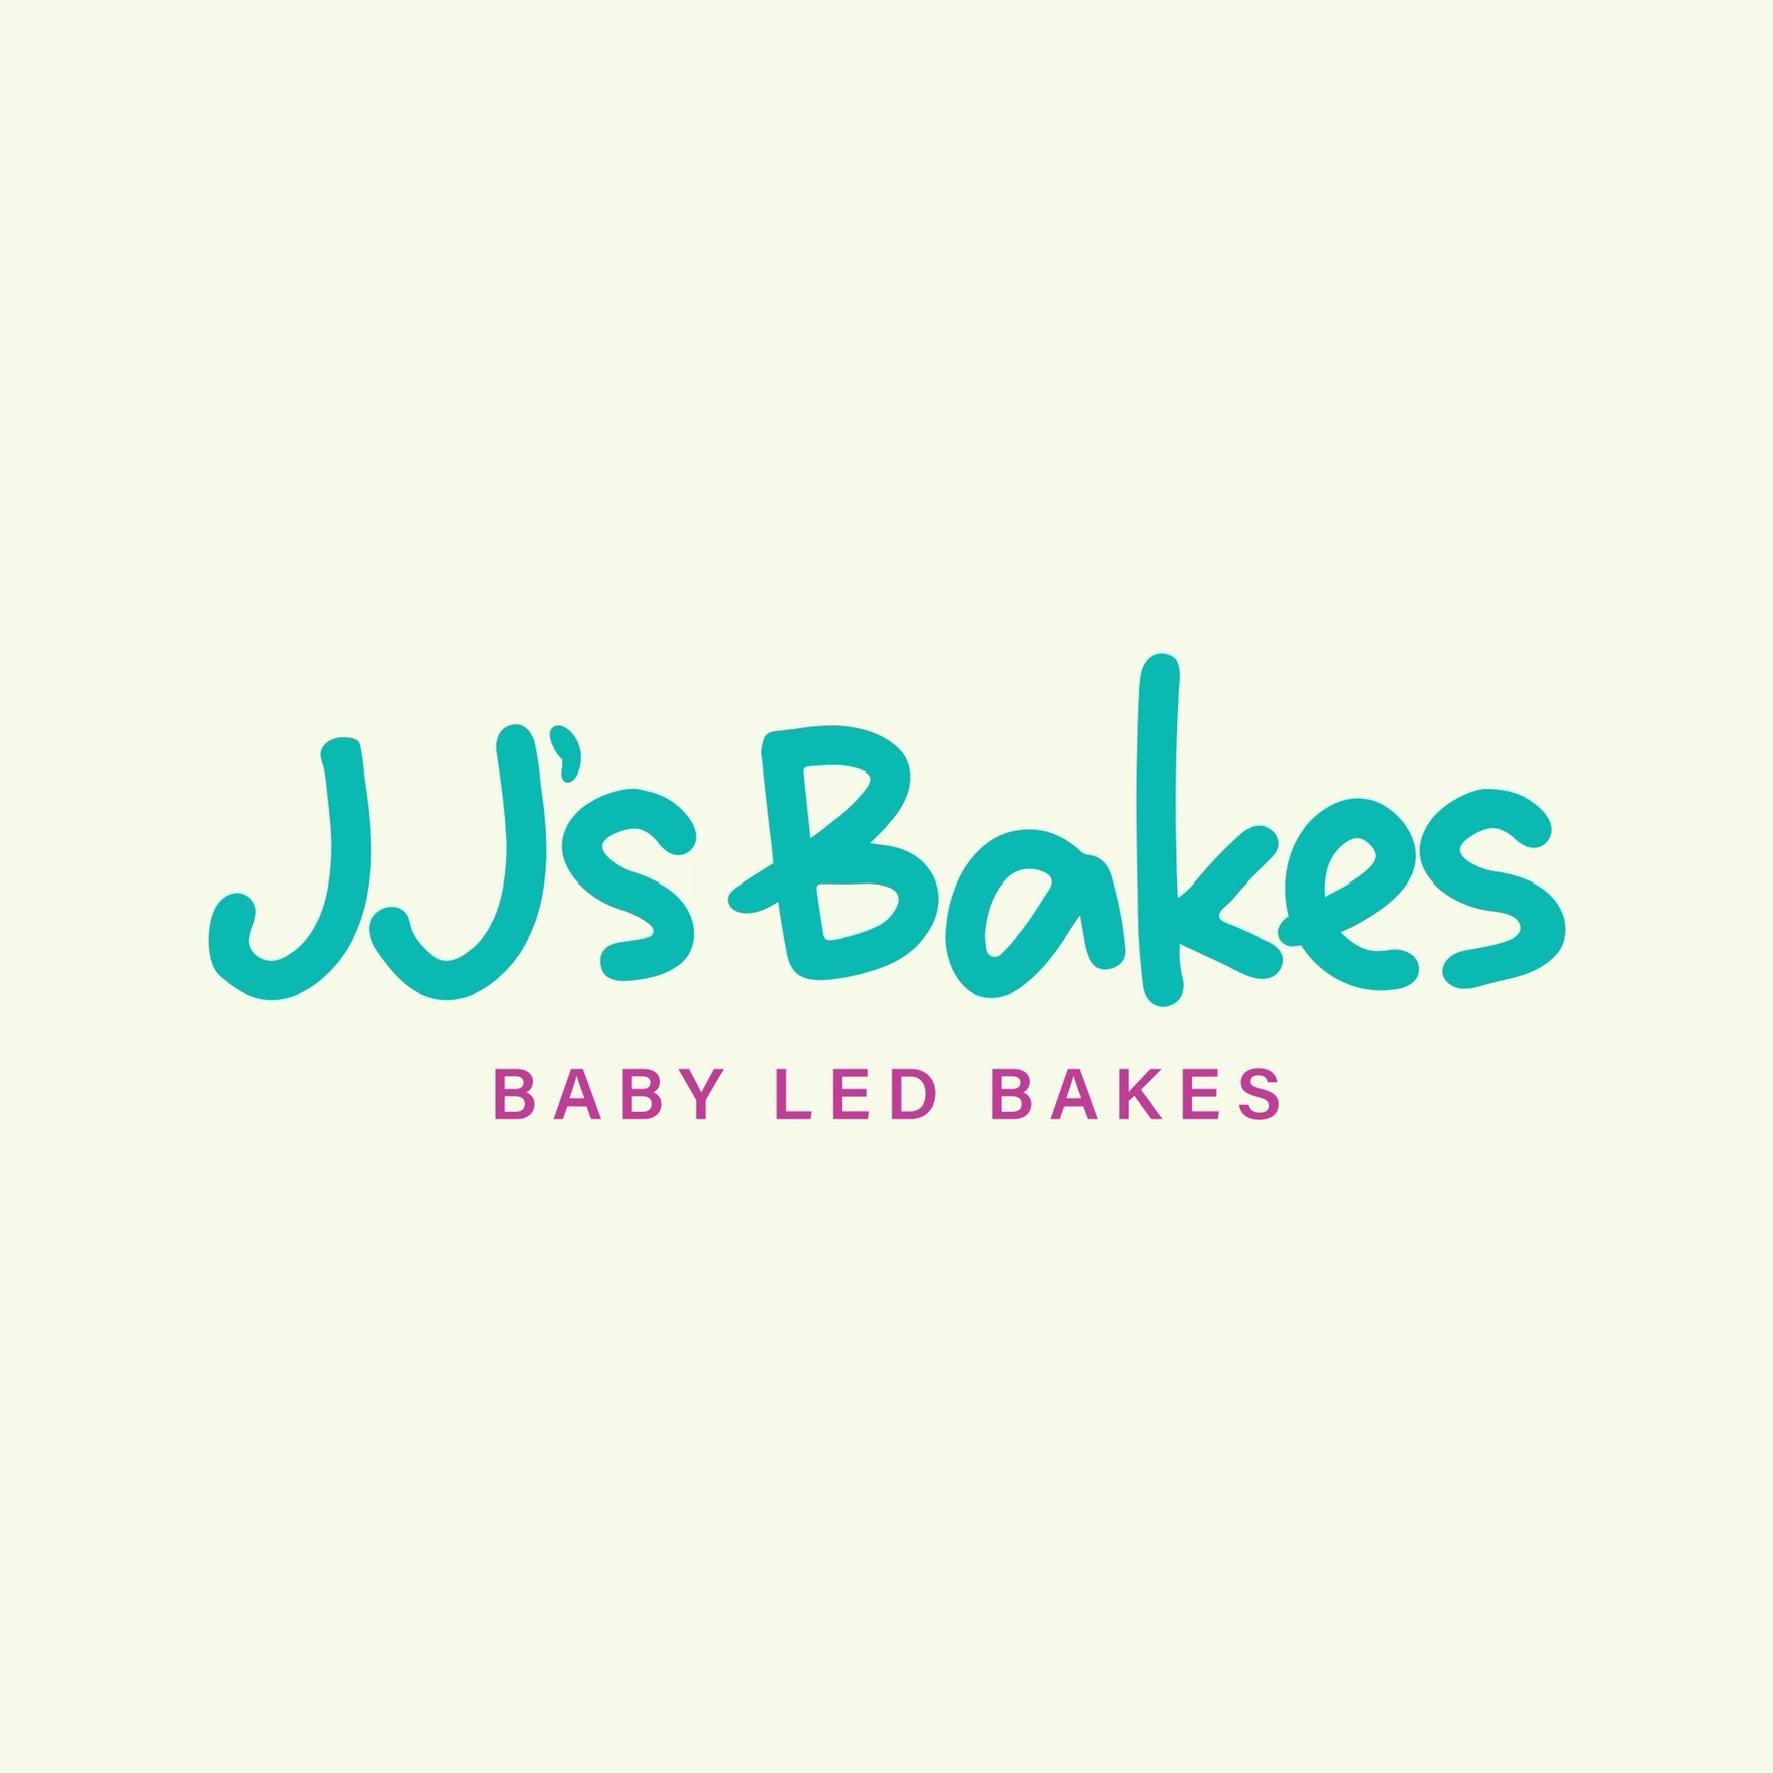 Baby Led Bakes's logo